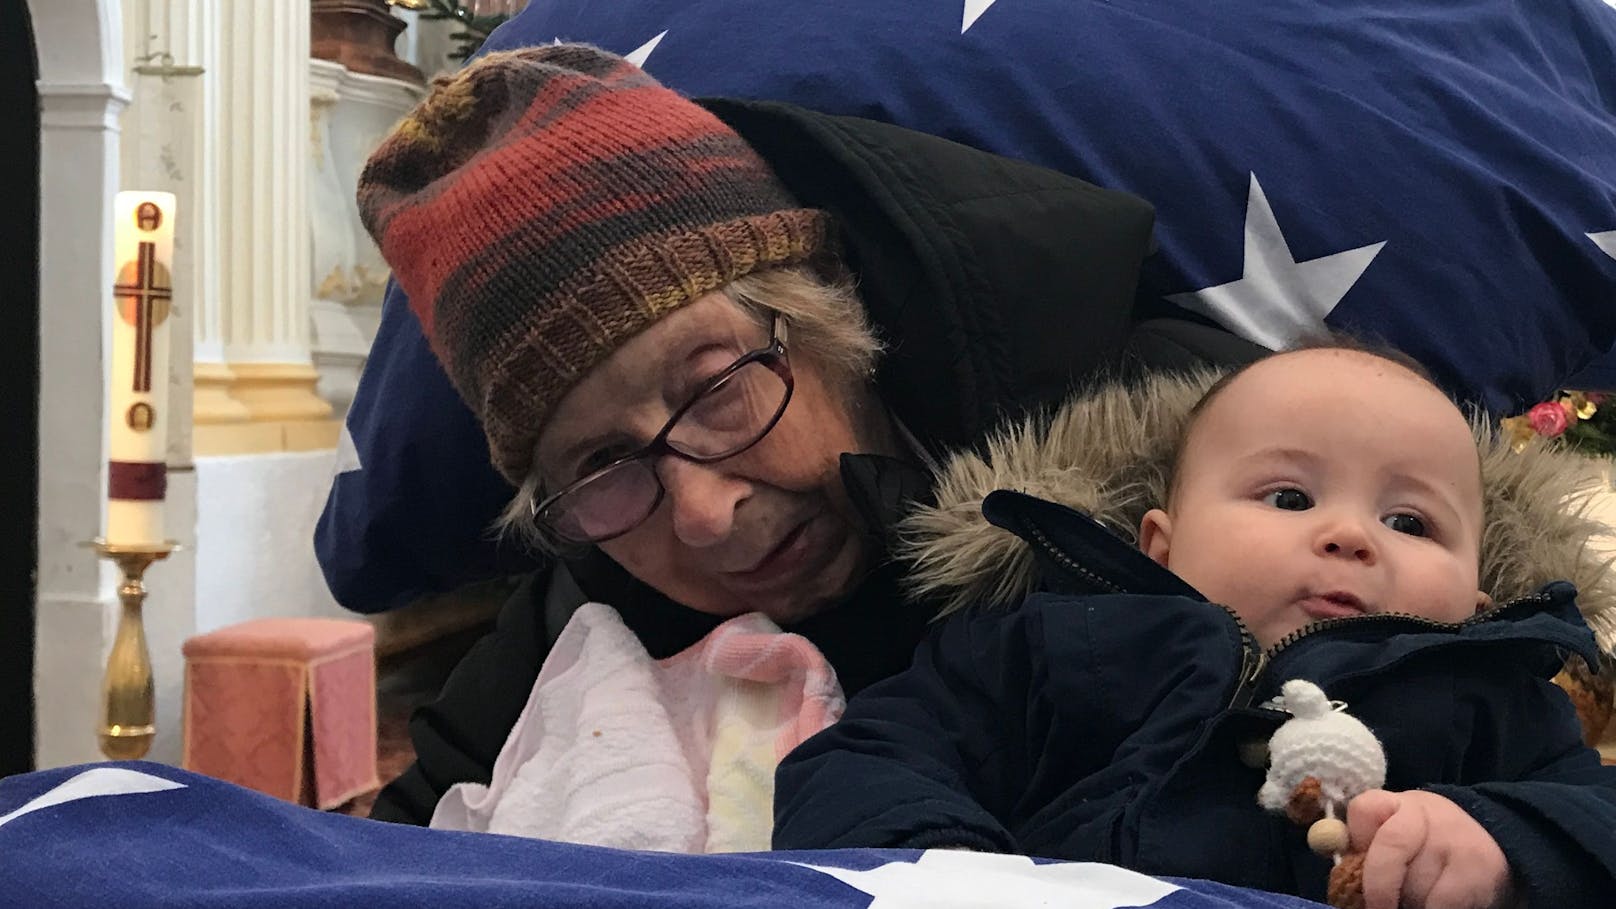 Die schwerkranke 92-Jährige hatte einen letzten Wunsch: Sie wollte bei der Taufe ihres Enkels Emil dabei sein. Der Verein "Rollende Engel" machte es möglich.